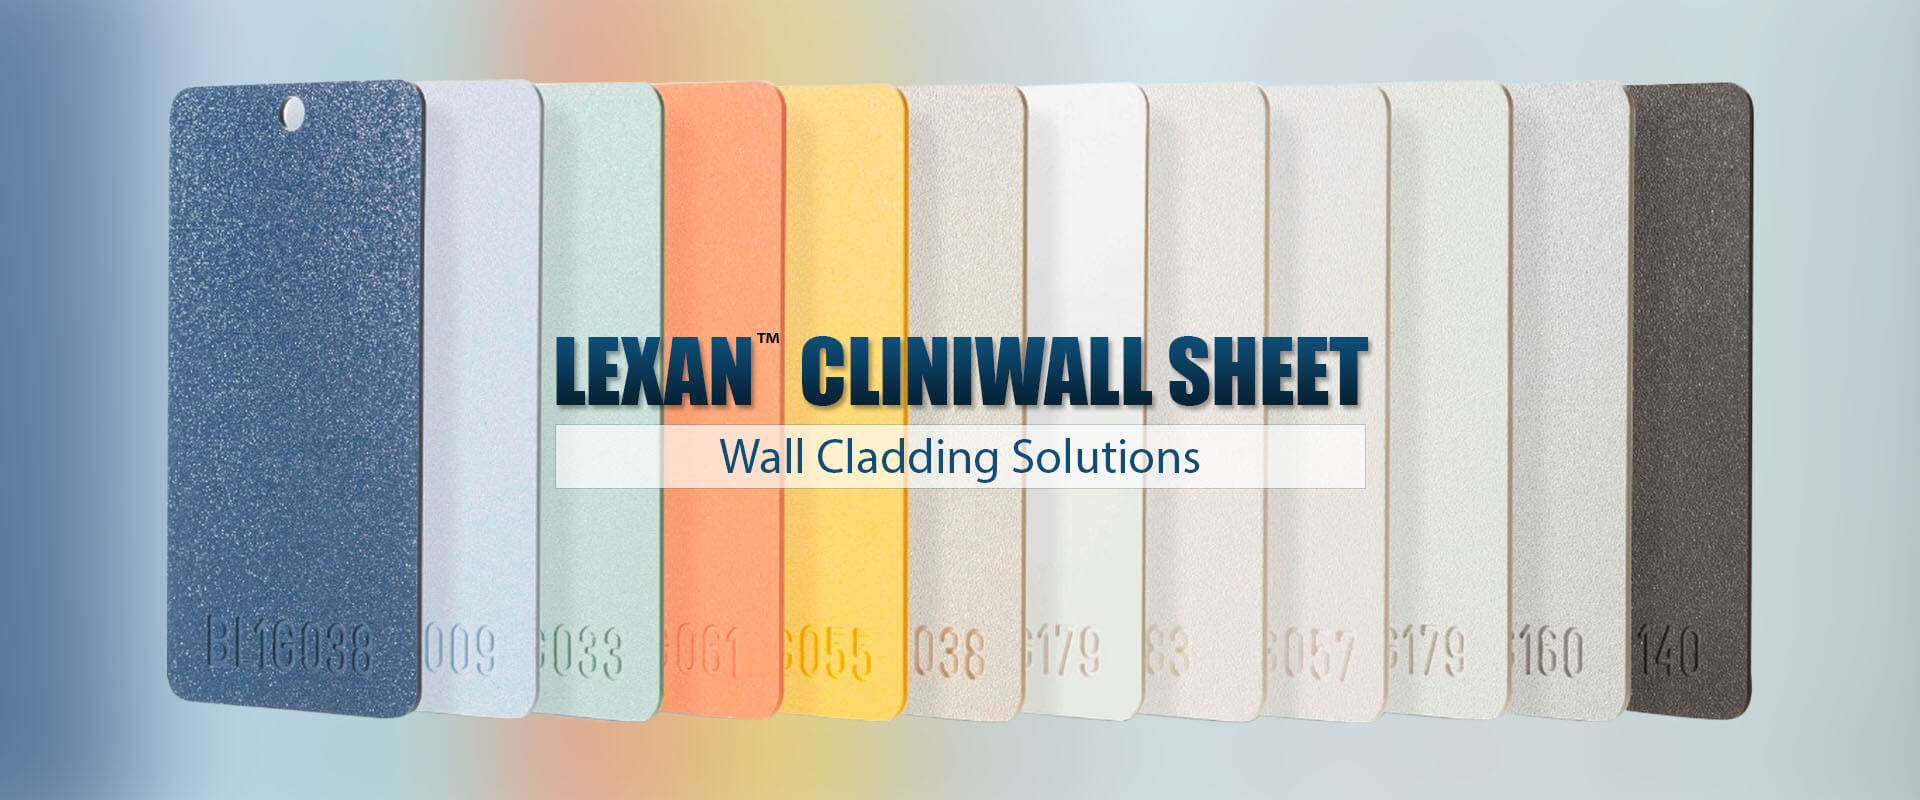 LEXAN™ Cliniwall Sheet